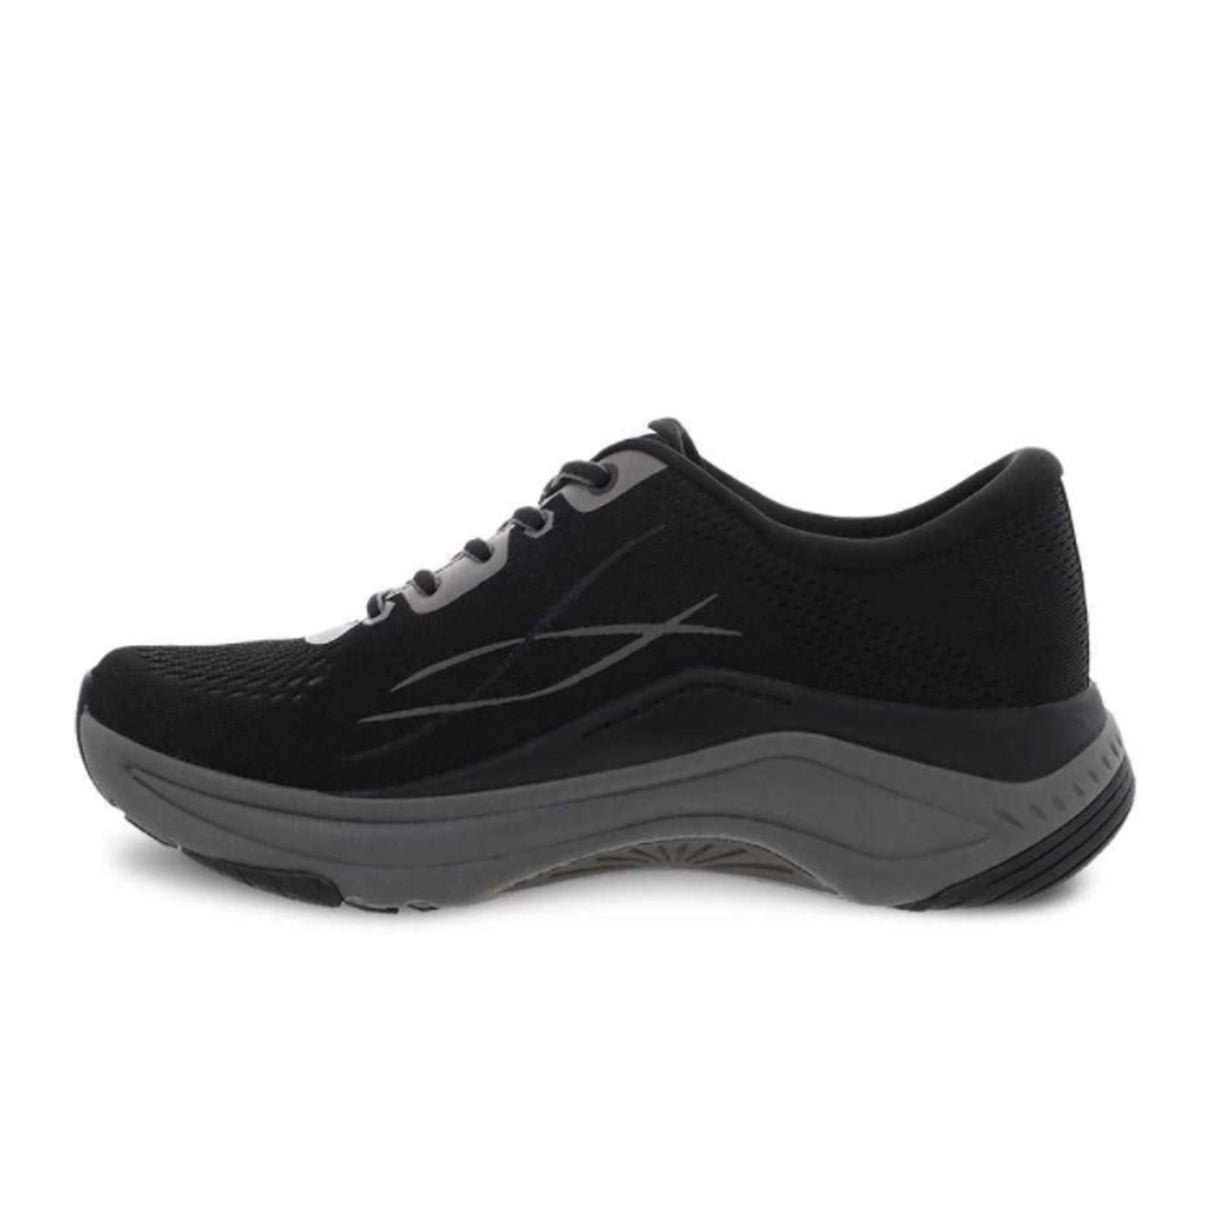 Dansko Pace Walking Shoe (Women) - Black/Grey Mesh Athletic - Walking - The Heel Shoe Fitters